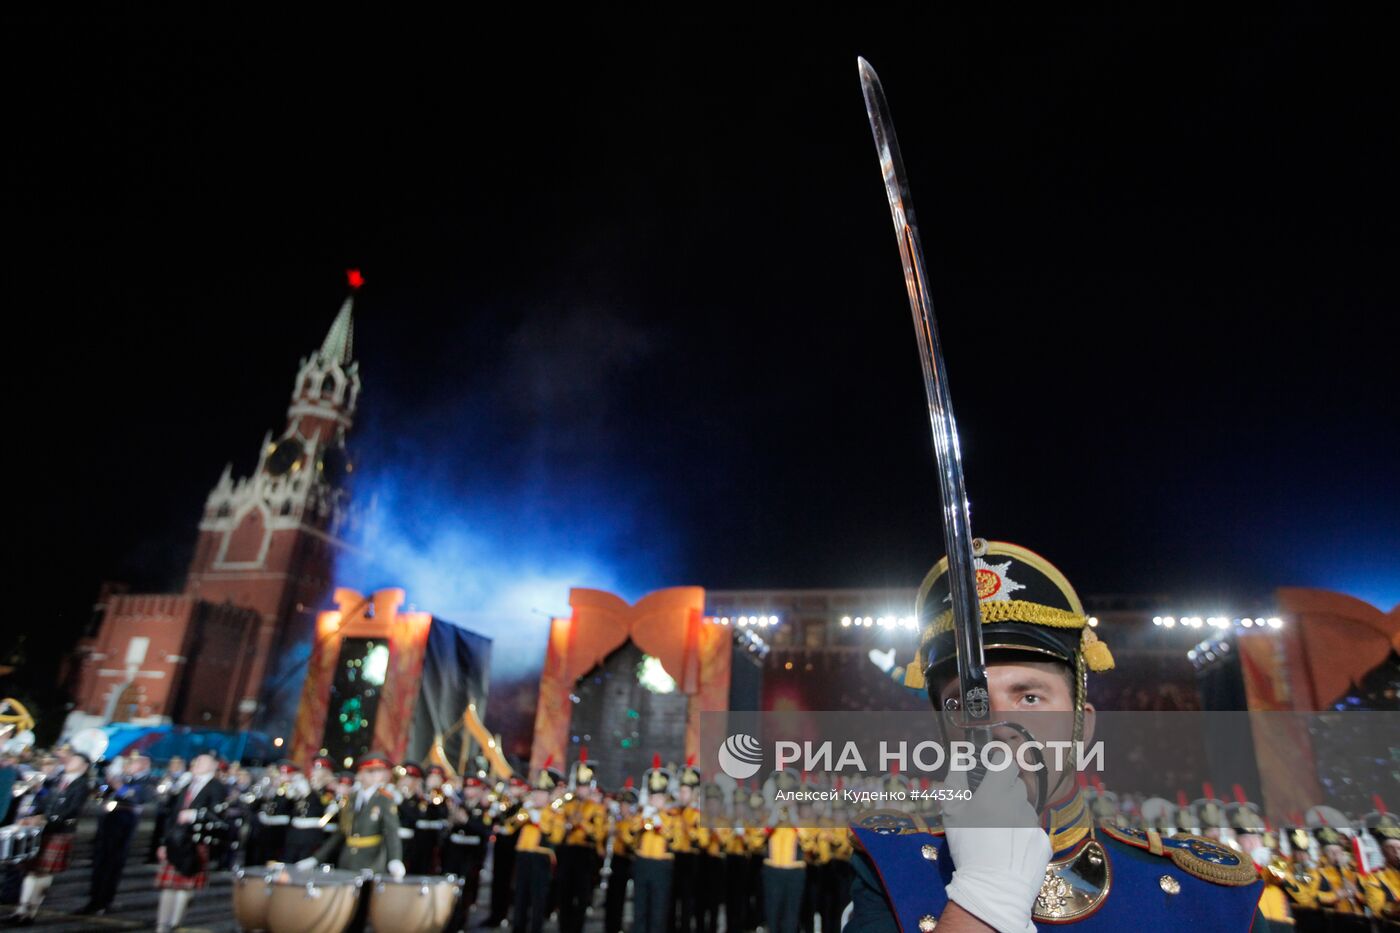 Репетиция фестиваля "Спасская башня" прошла на Красной площади